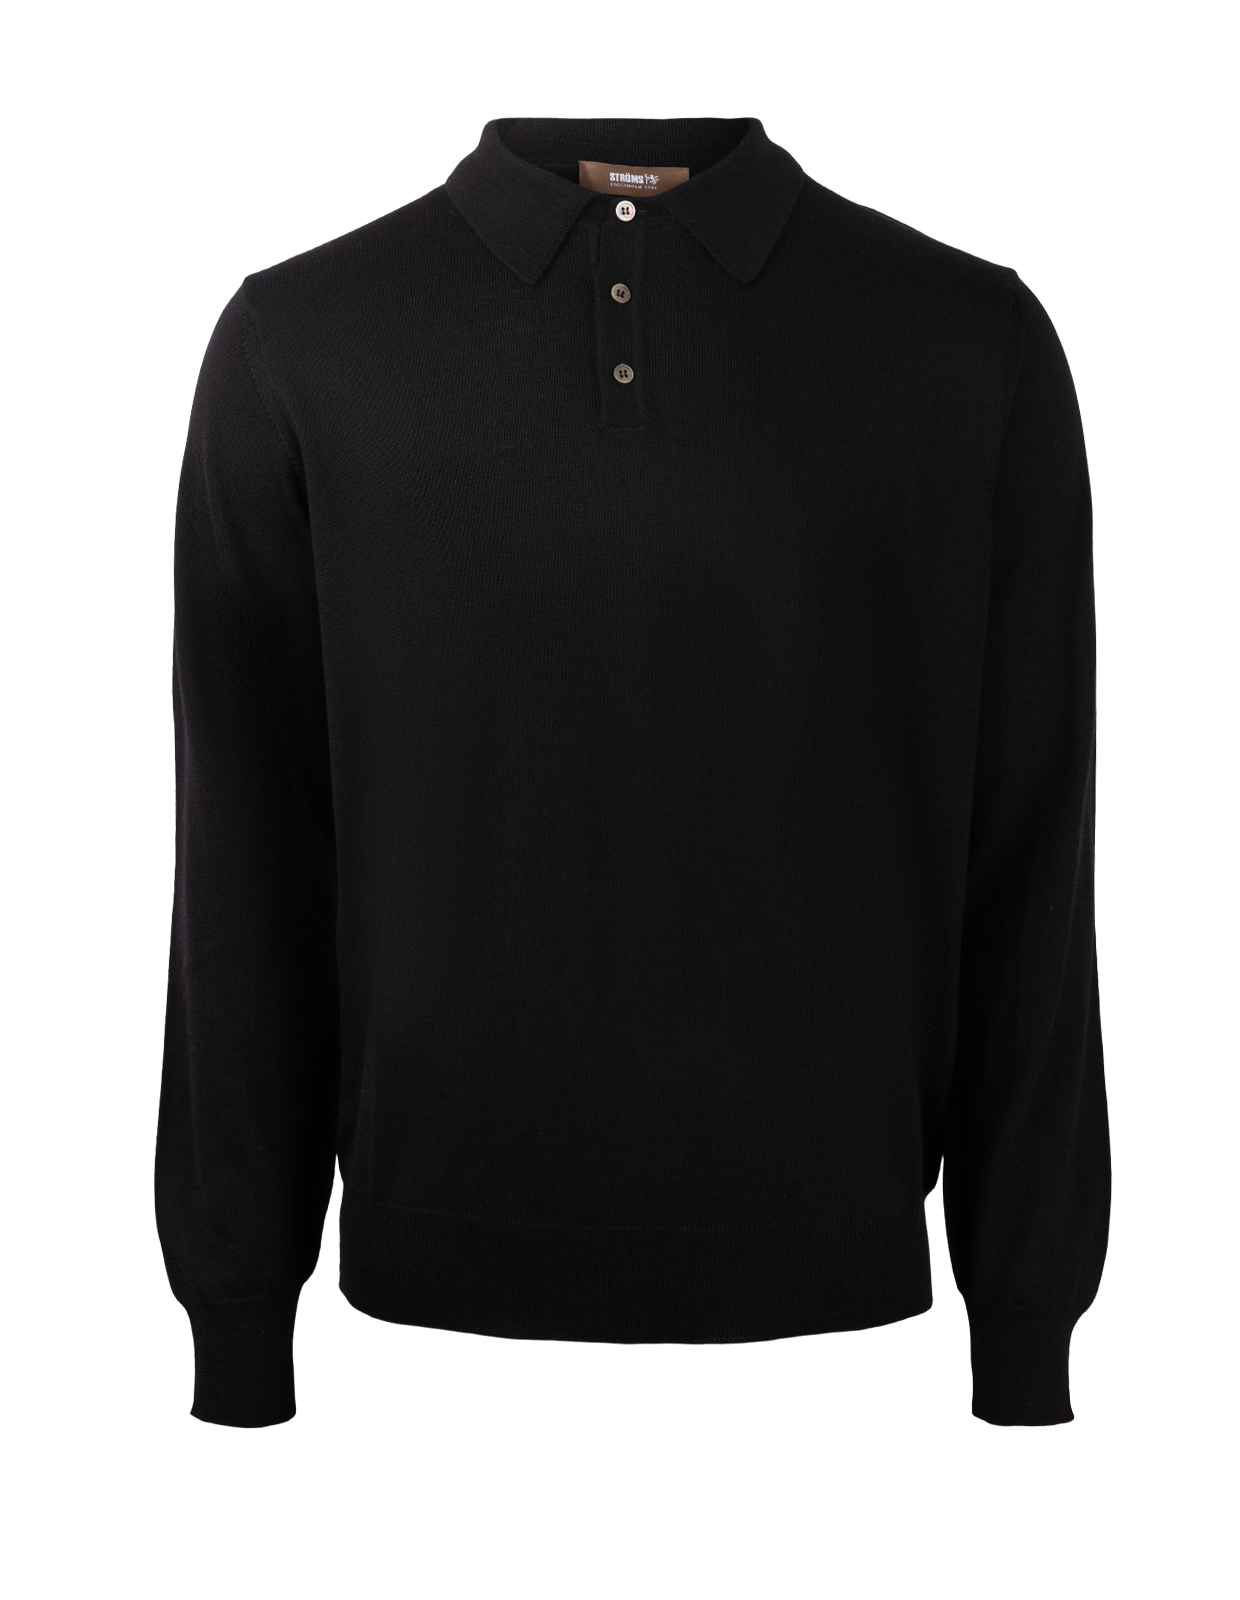 Poloshirt Sweater Merino Black